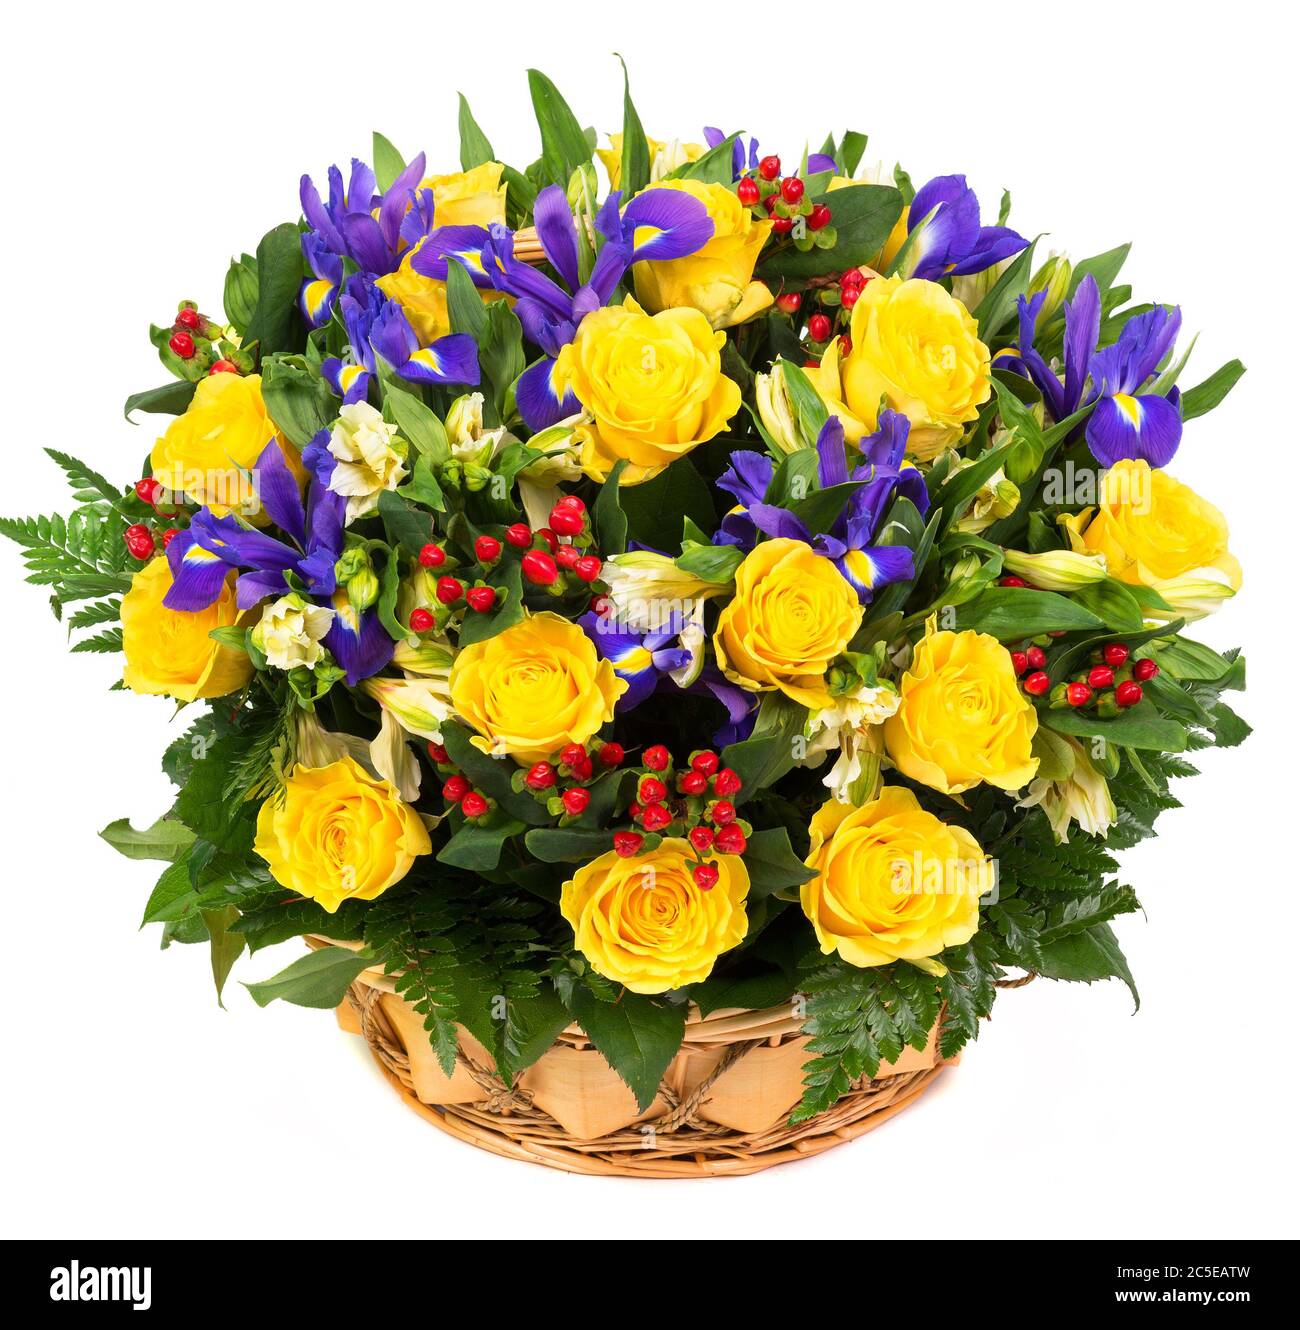 Natürliche gelbe Rosen und blaue Iris in einem Korb isoliert auf weißem Hintergrund Stockfoto